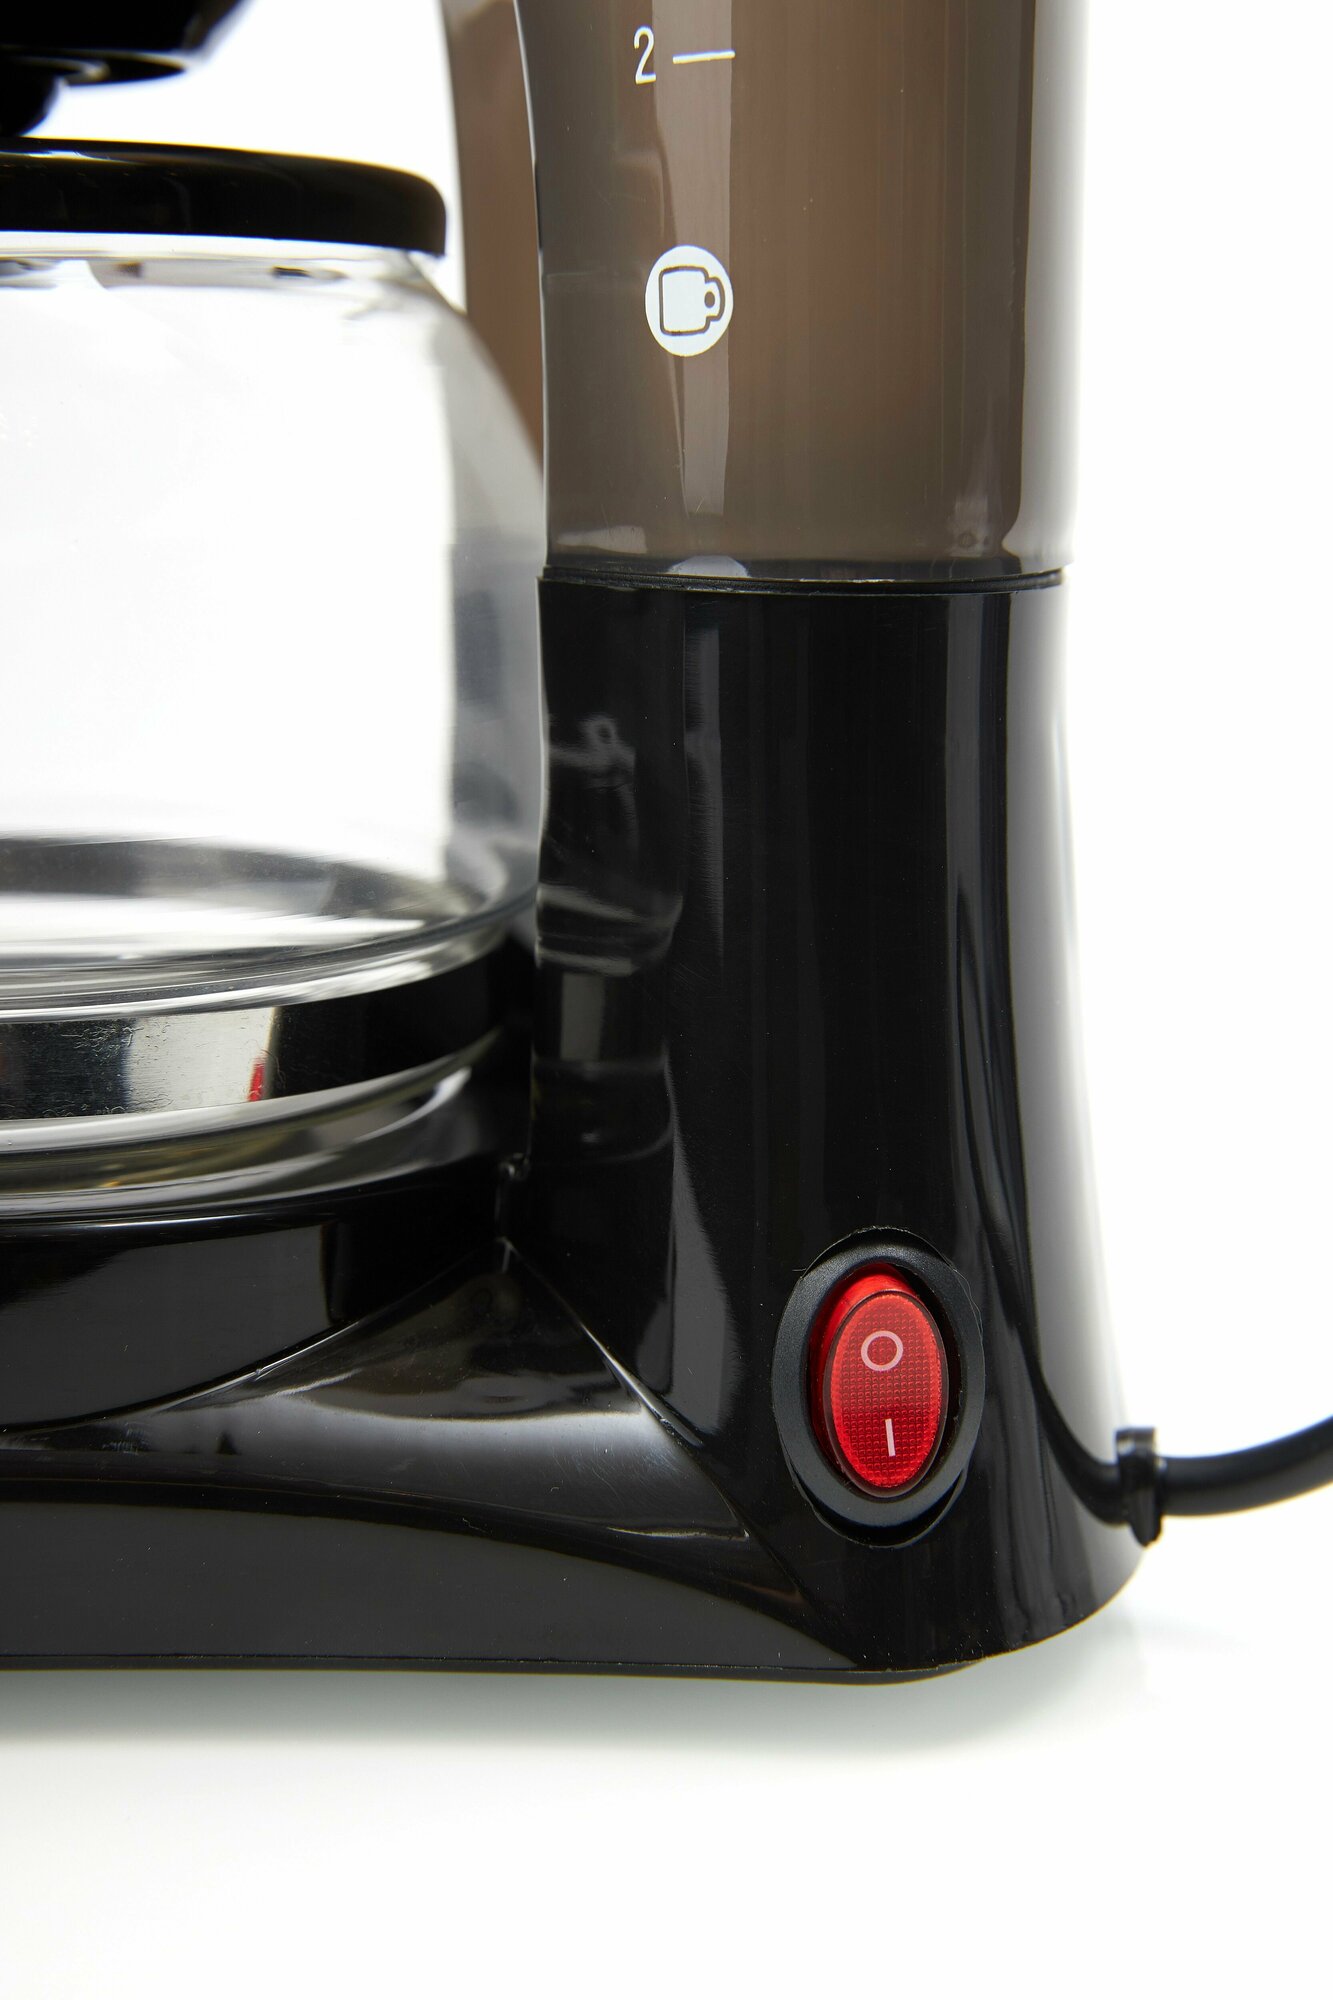 Кофеварка GoodHelper СМ-D102, черный